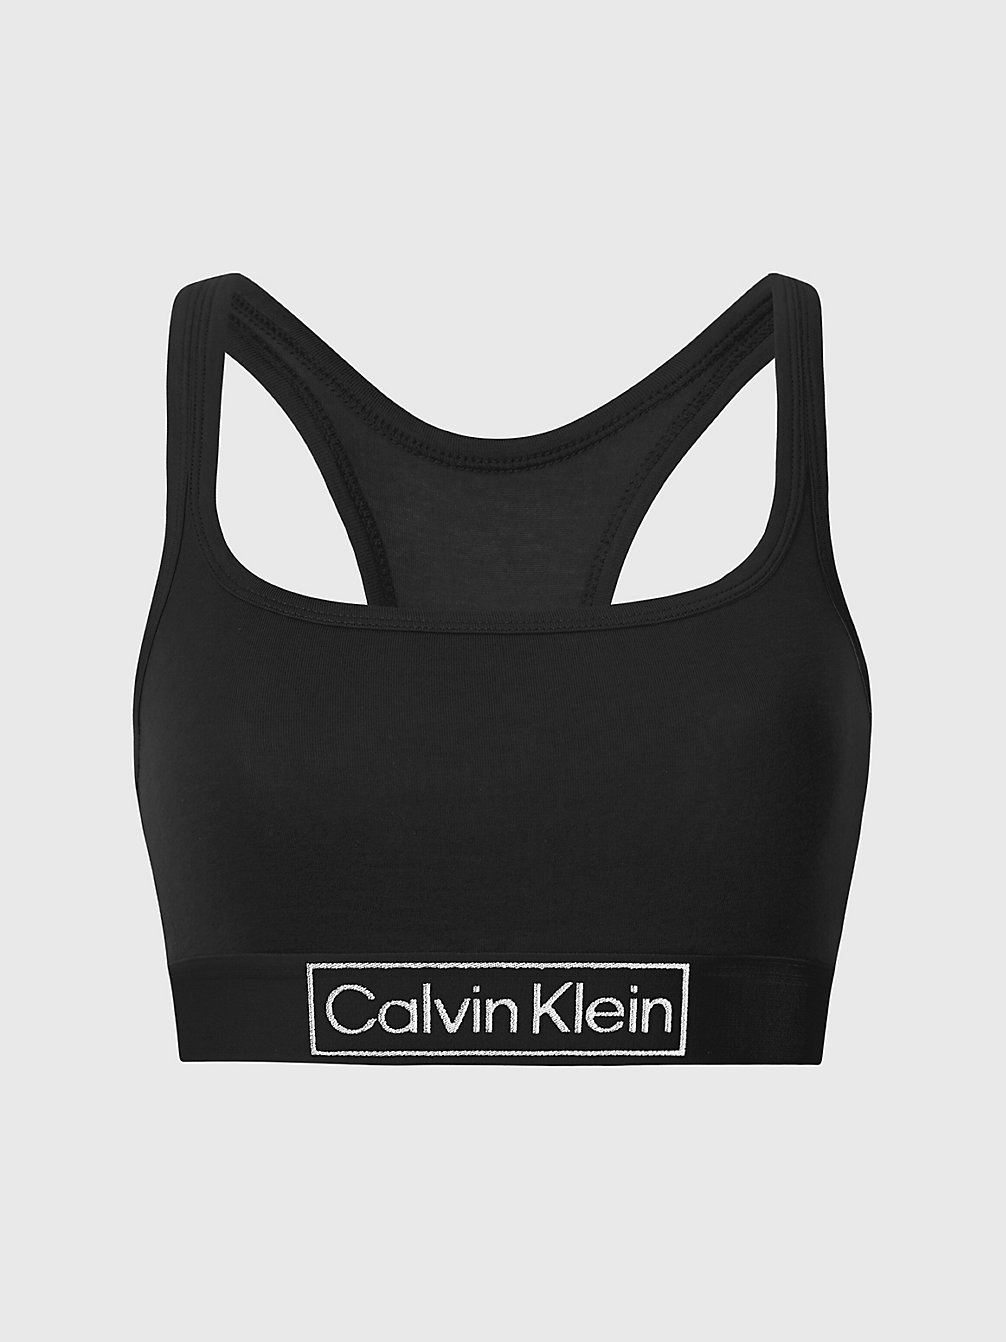 BLACK Bralette - Reimagined Heritage undefined women Calvin Klein